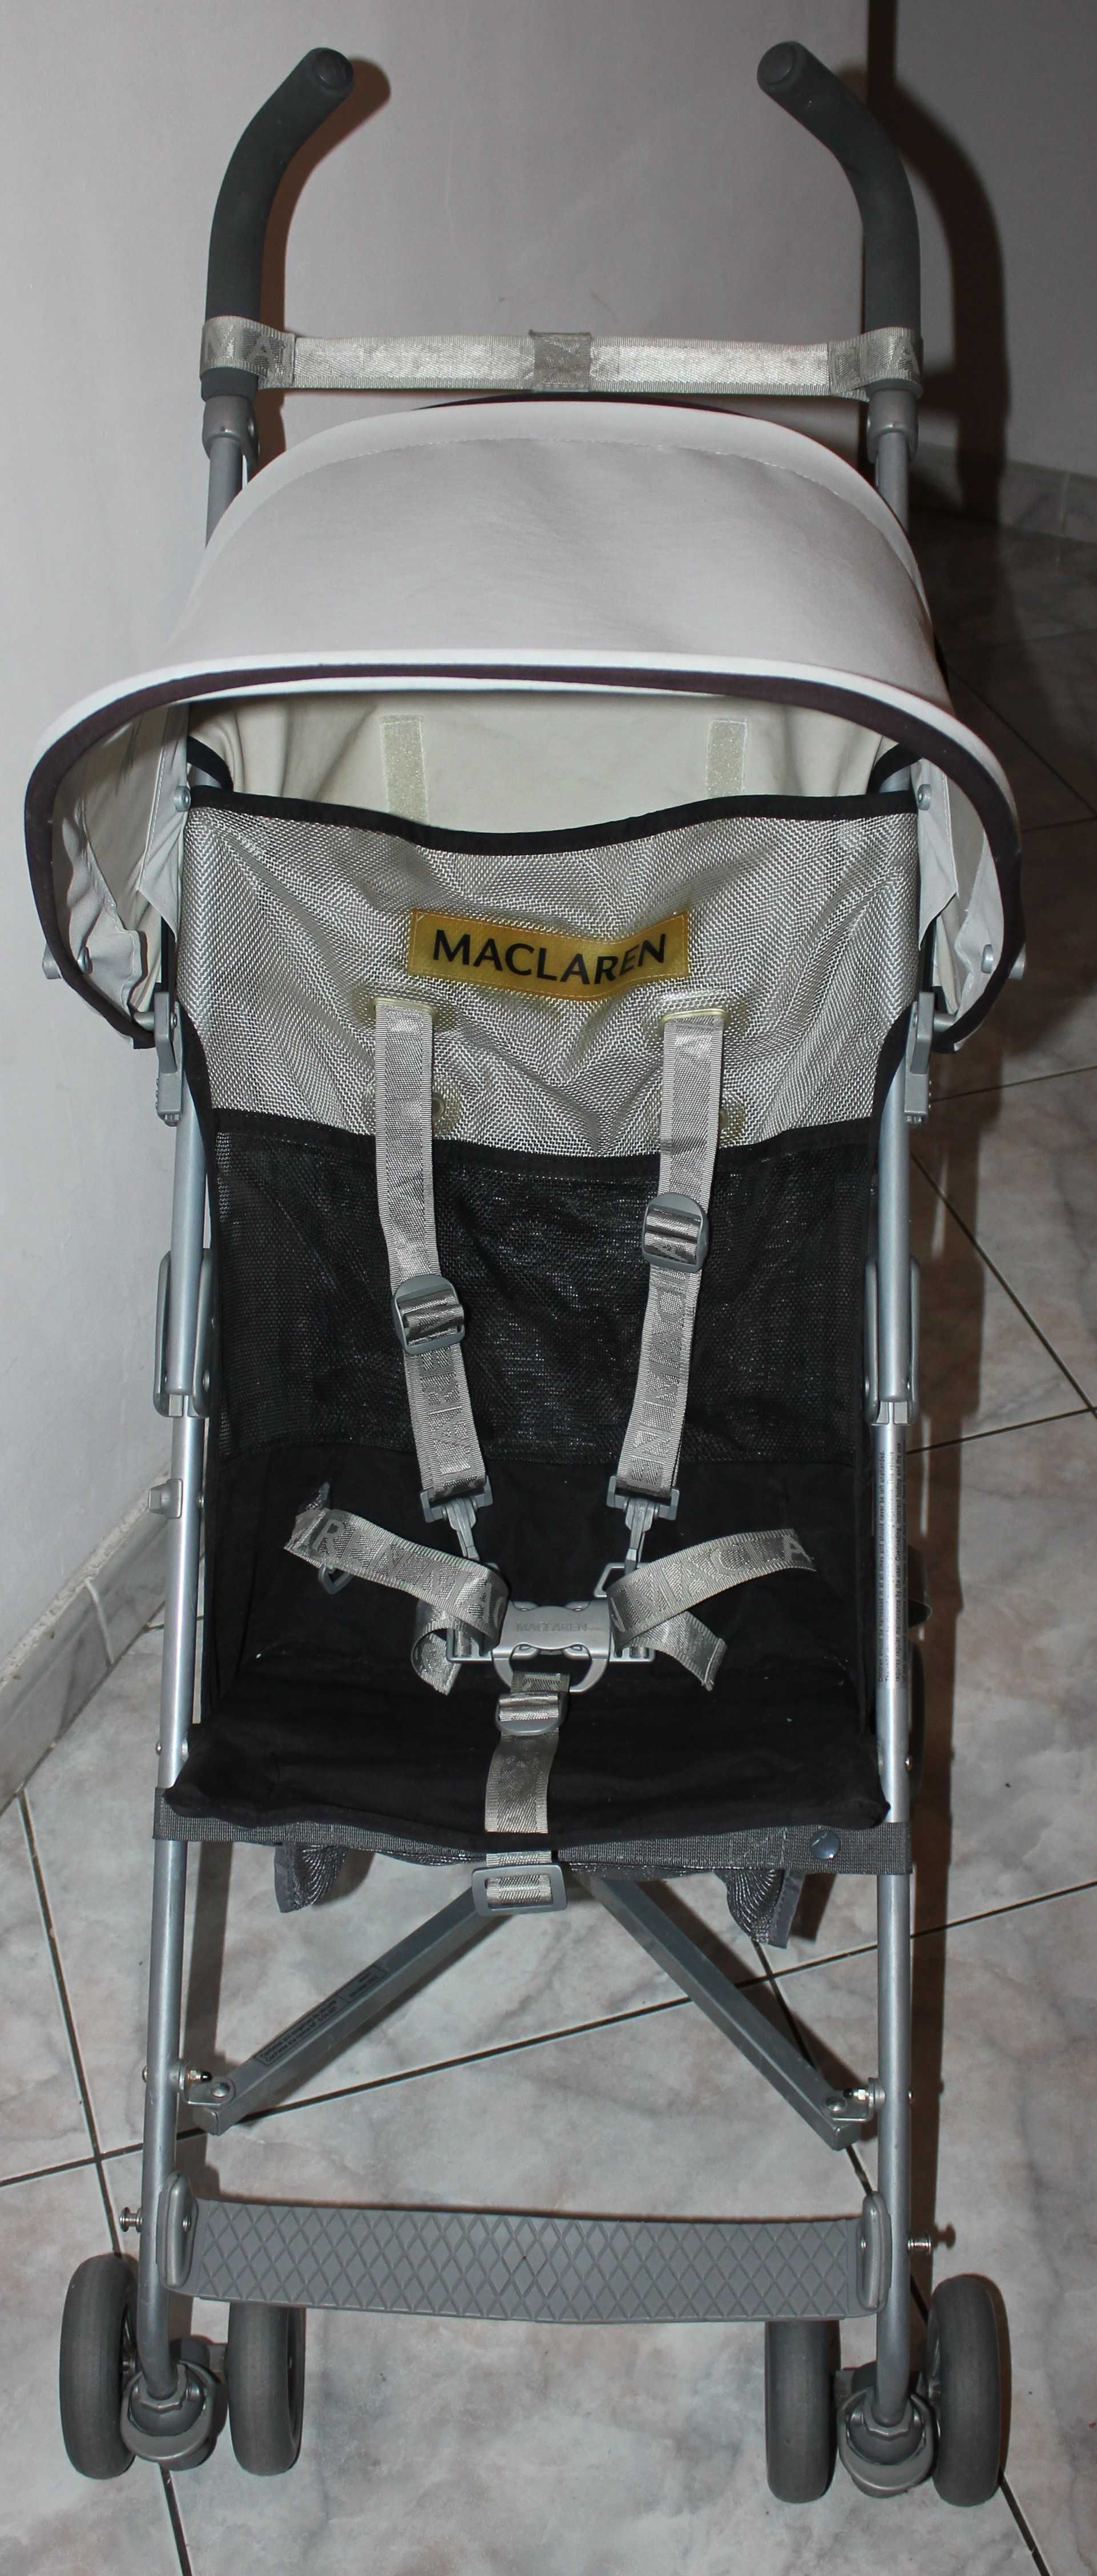 Carucior Maclaren Volo, recomandat varsta 6 luni - 3 ani (15 kg )